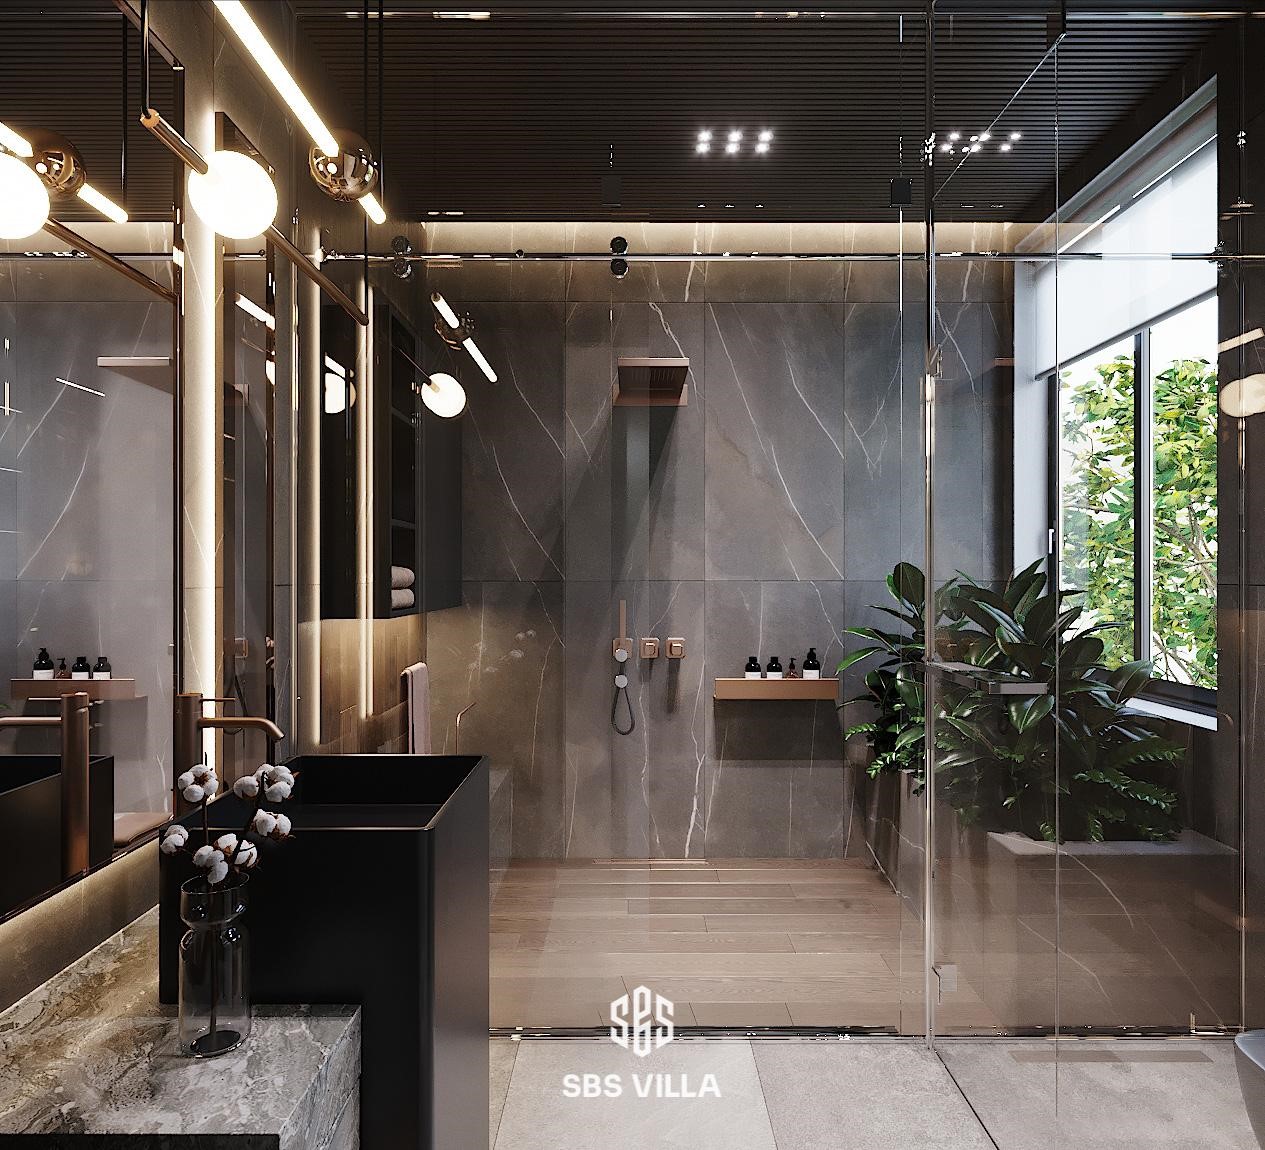 Thiết kế khu vực phòng tắm mang phong cách hiện đại nổi bật với lối kiến trúc không gian mở, kết nối trực tiếp với thiên nhiên xanh mát. Bên cạnh đó, thiết kế sử dụng gam màu tối chủ đạo, tạo điểm nhấn cùng hệ thống đèn ánh vàng sang trọng tạo nên một tổng thể hài hòa và không gian sinh hoạt đầy lý tưởng ngay tại gia